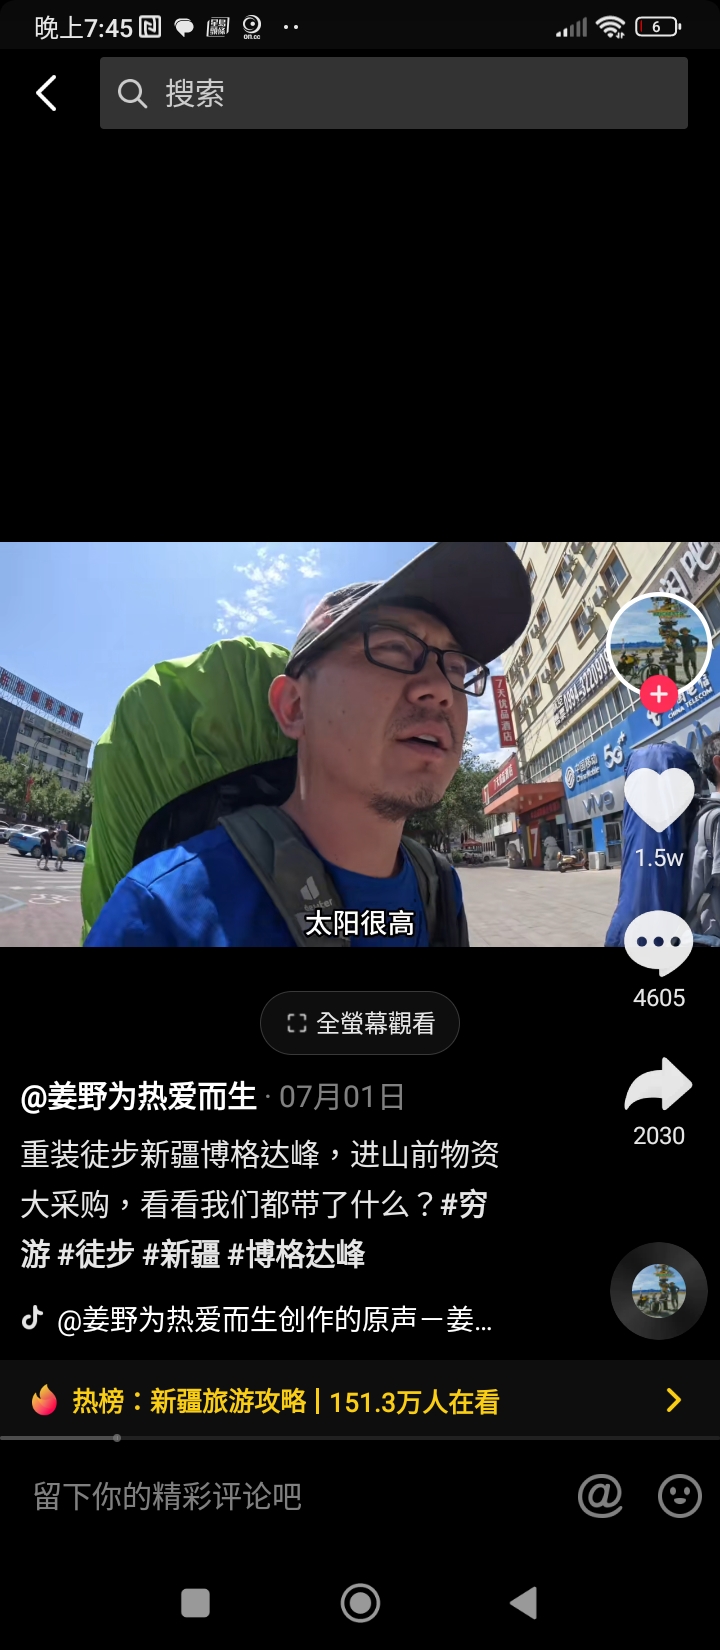 姜野抖音最后一次于7月1日更新，是关于徒步博格达峰的准备。